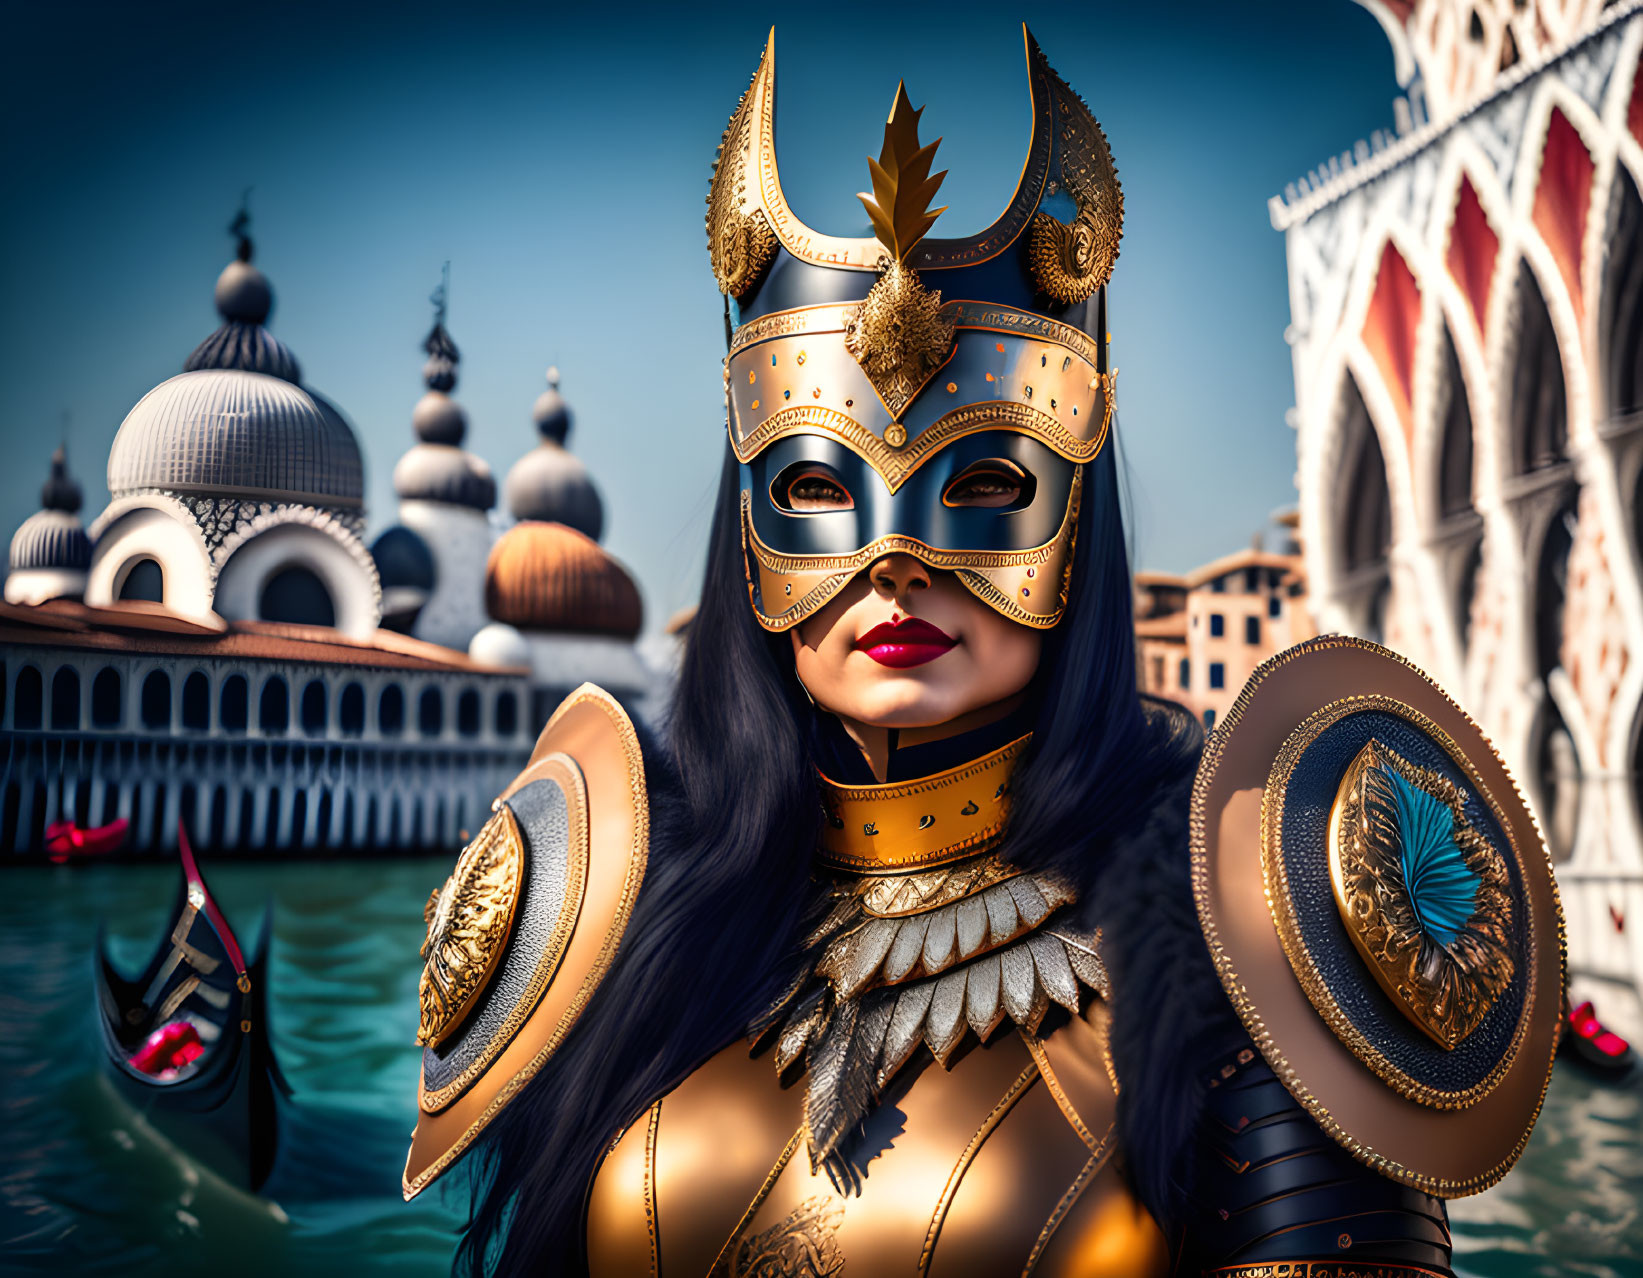 Masquerade in Venice